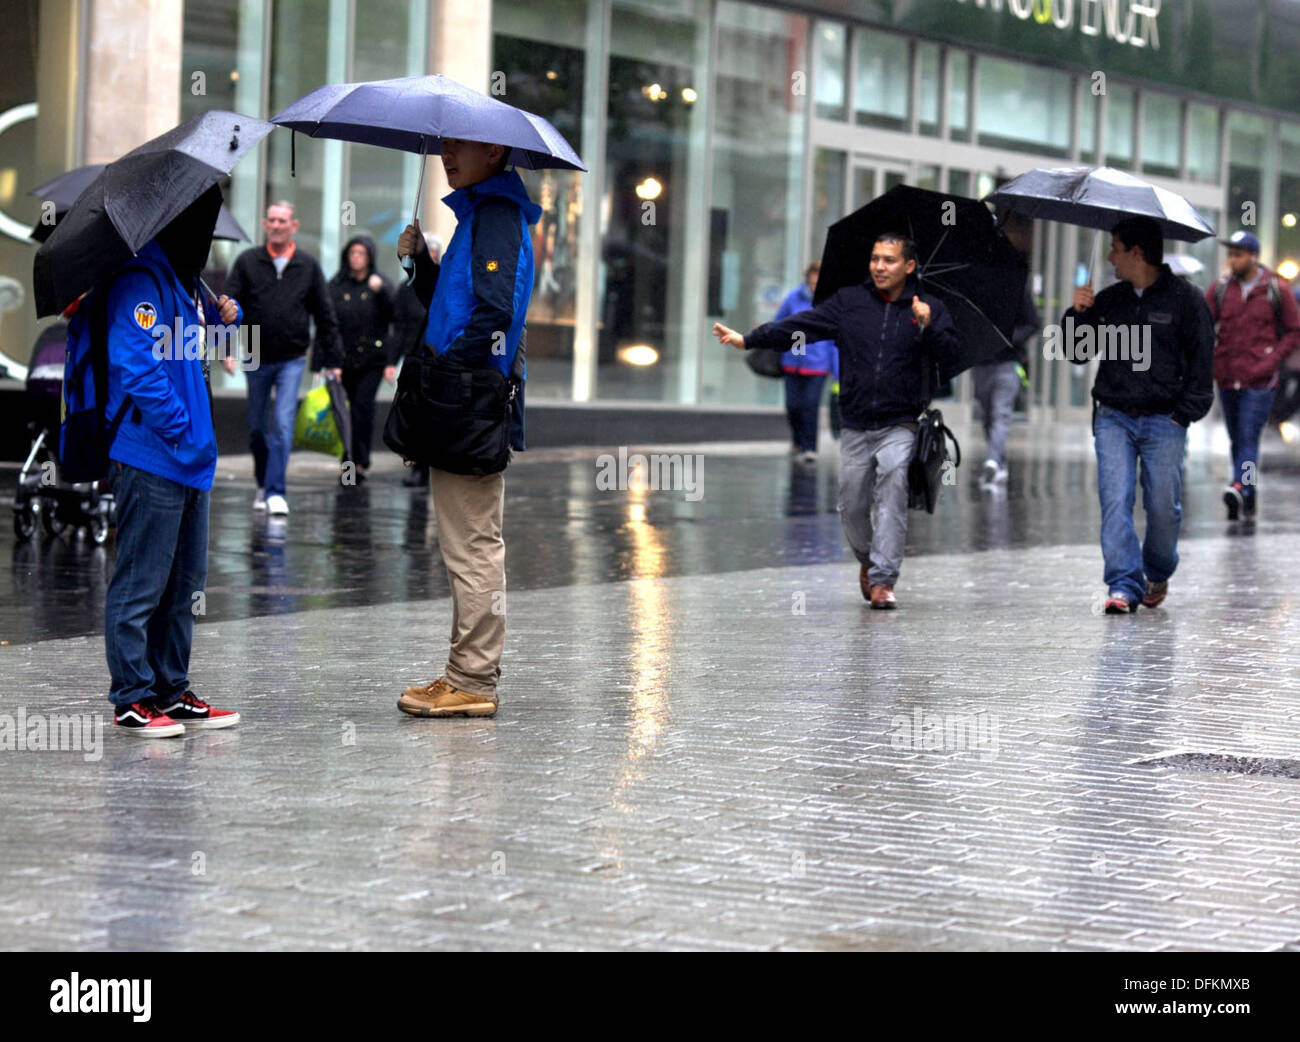 19/9/13 Rain in Liverpool City Centre Stock Photo